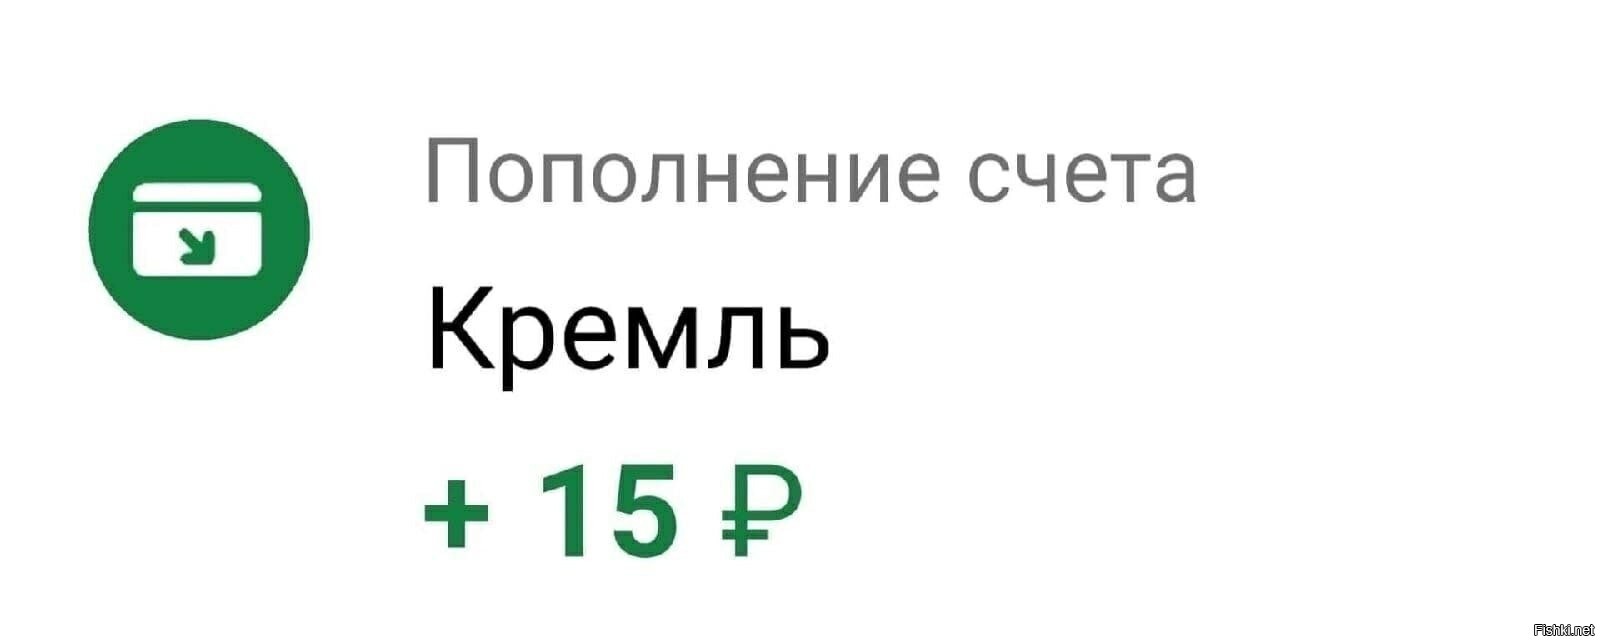 Пополнение счета Кремль 15 рублей